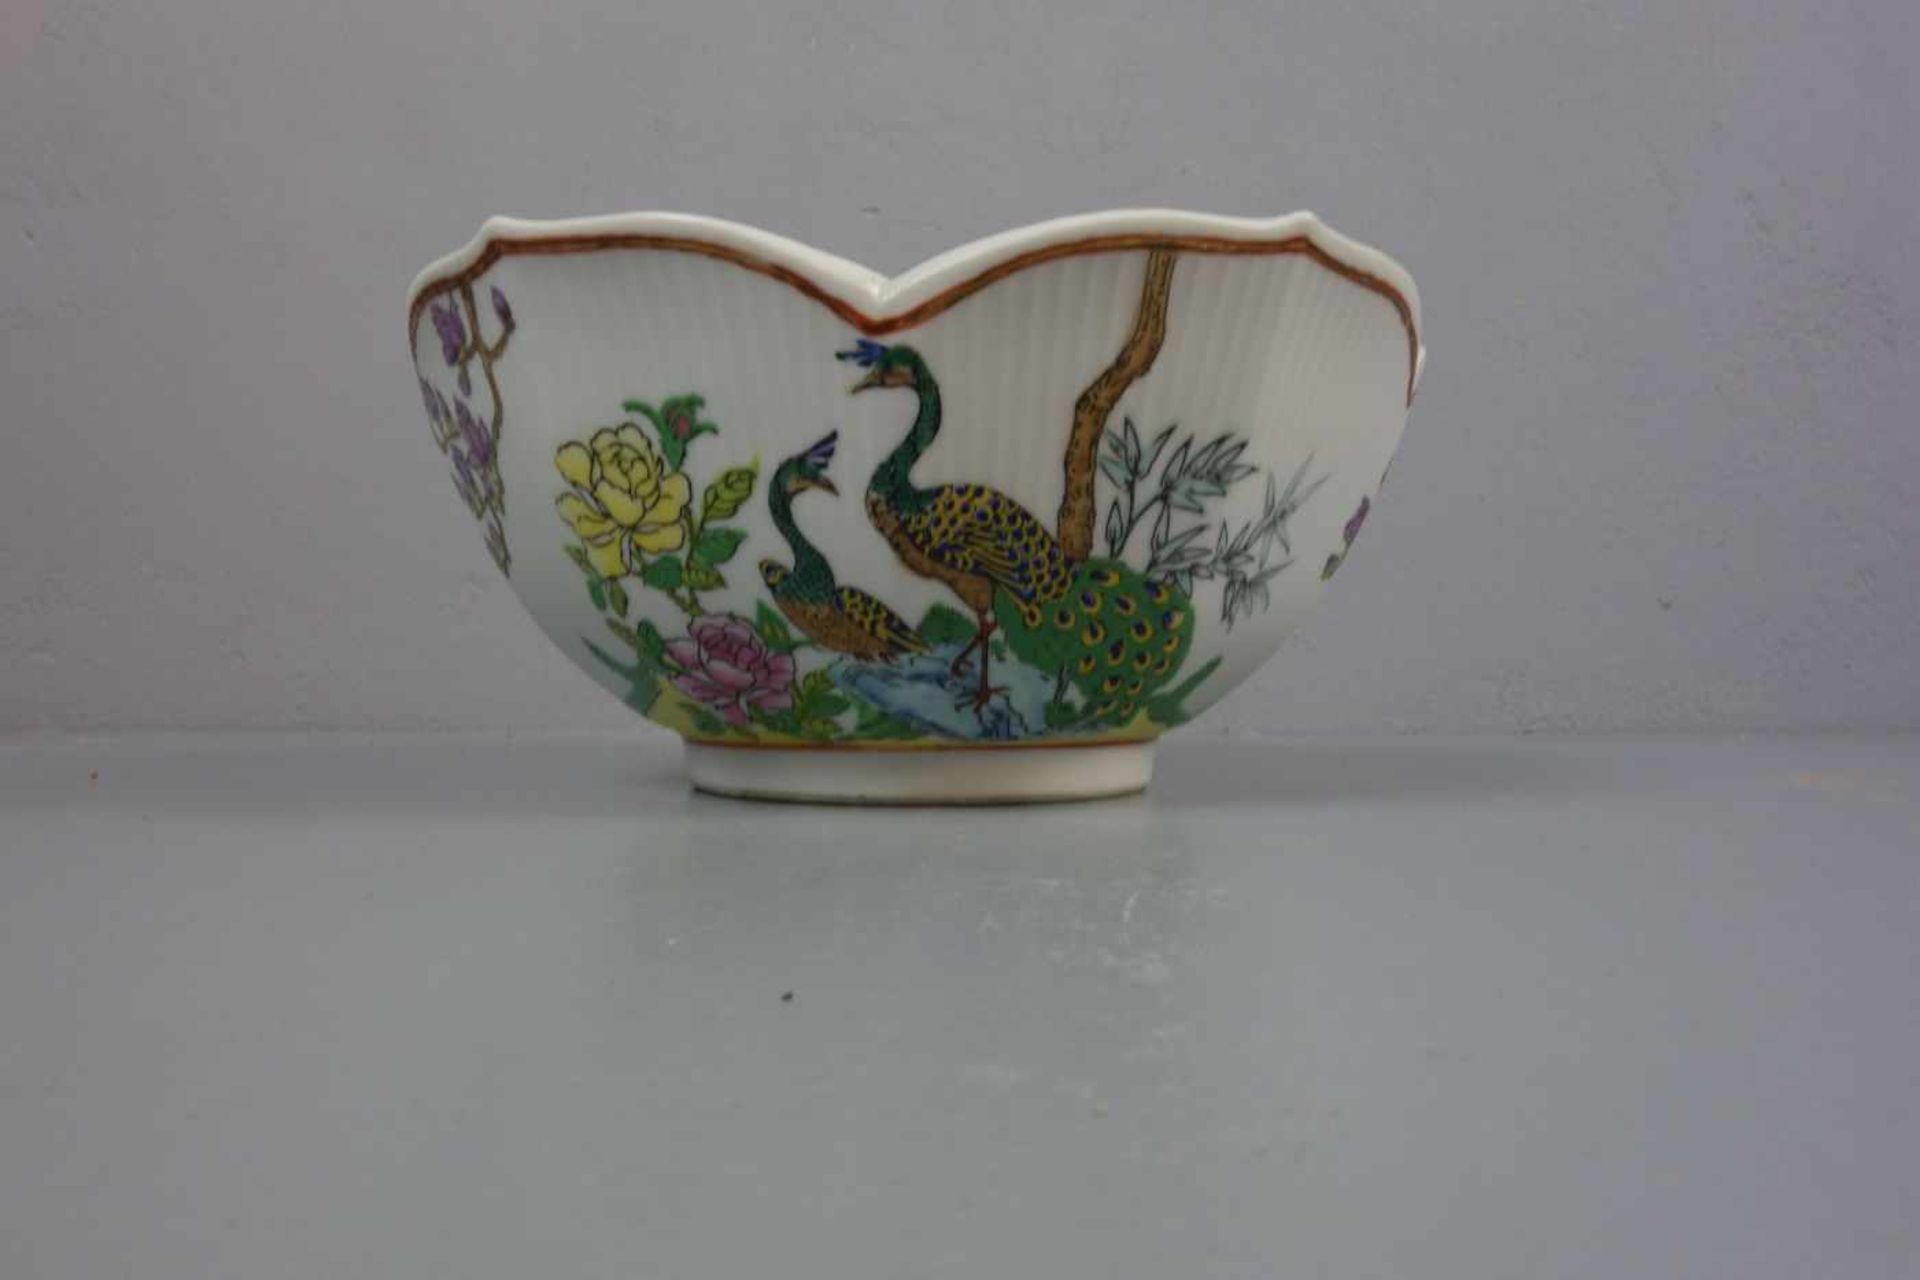 CHINESISCHE SCHALE / bowl, Porzellan, unter dem Stand aufglasurrot gemarkt mit Vasenmotiv, flankiert - Image 4 of 4